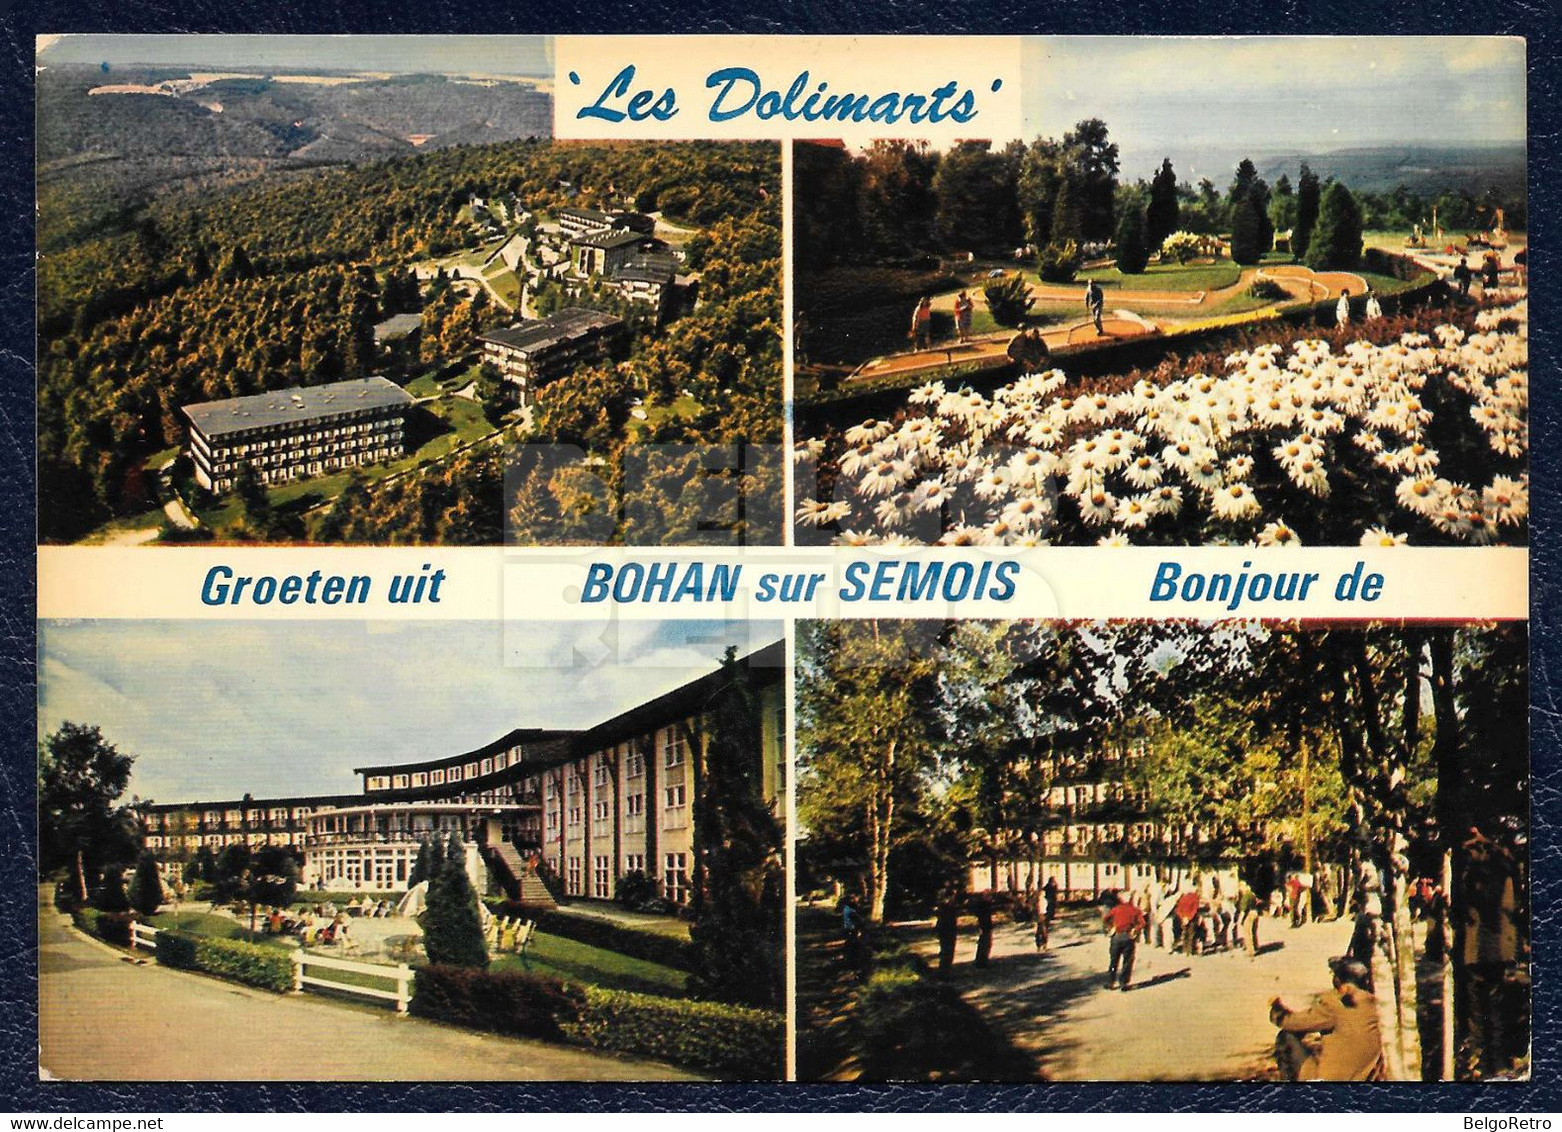 BOHAN-SUR-SEMOIS : Les Dolimarts (Bonjour De - Groeten Uit) [2 Scans R°V°] - Vresse-sur-Semois